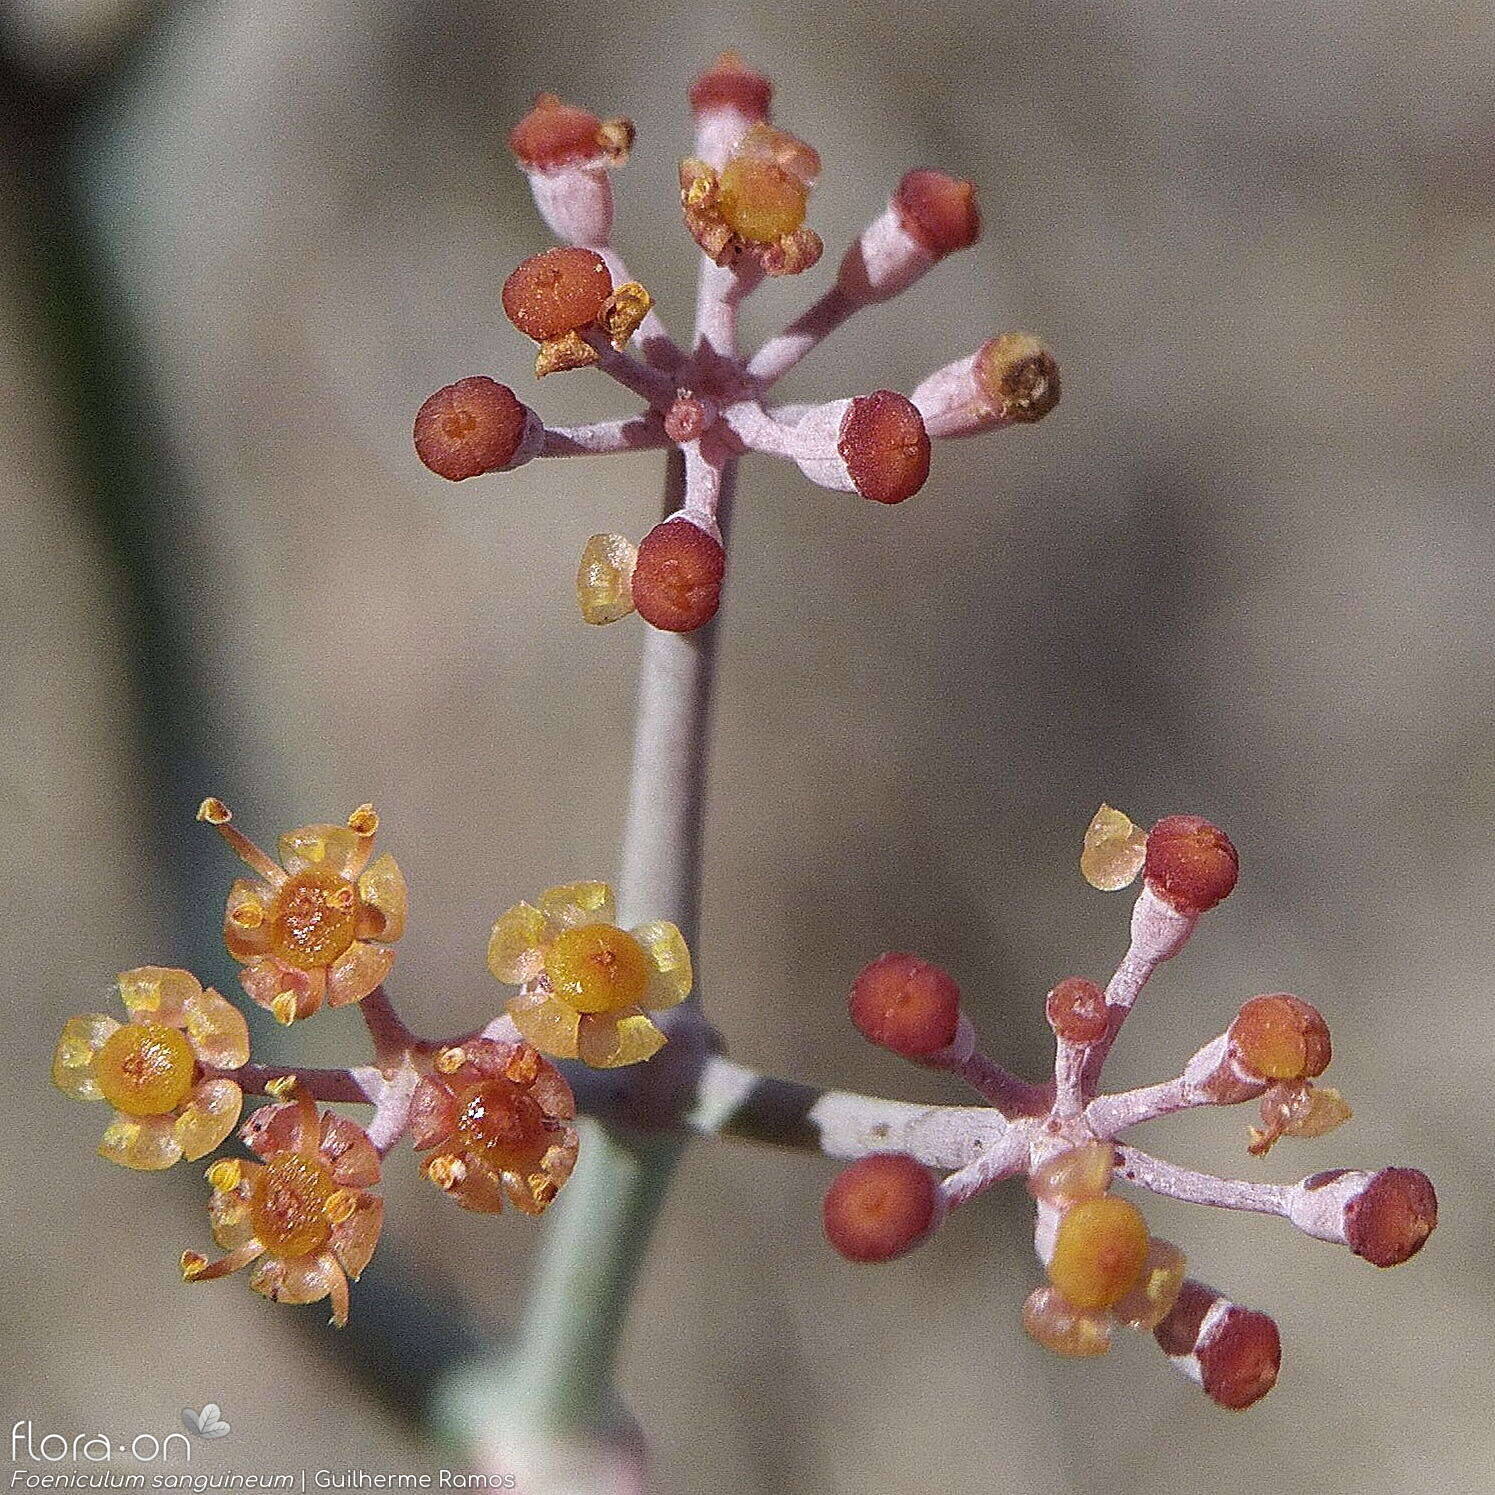 Foeniculum sanguineum - Flor (close-up) | Guilherme Ramos; CC BY-NC 4.0